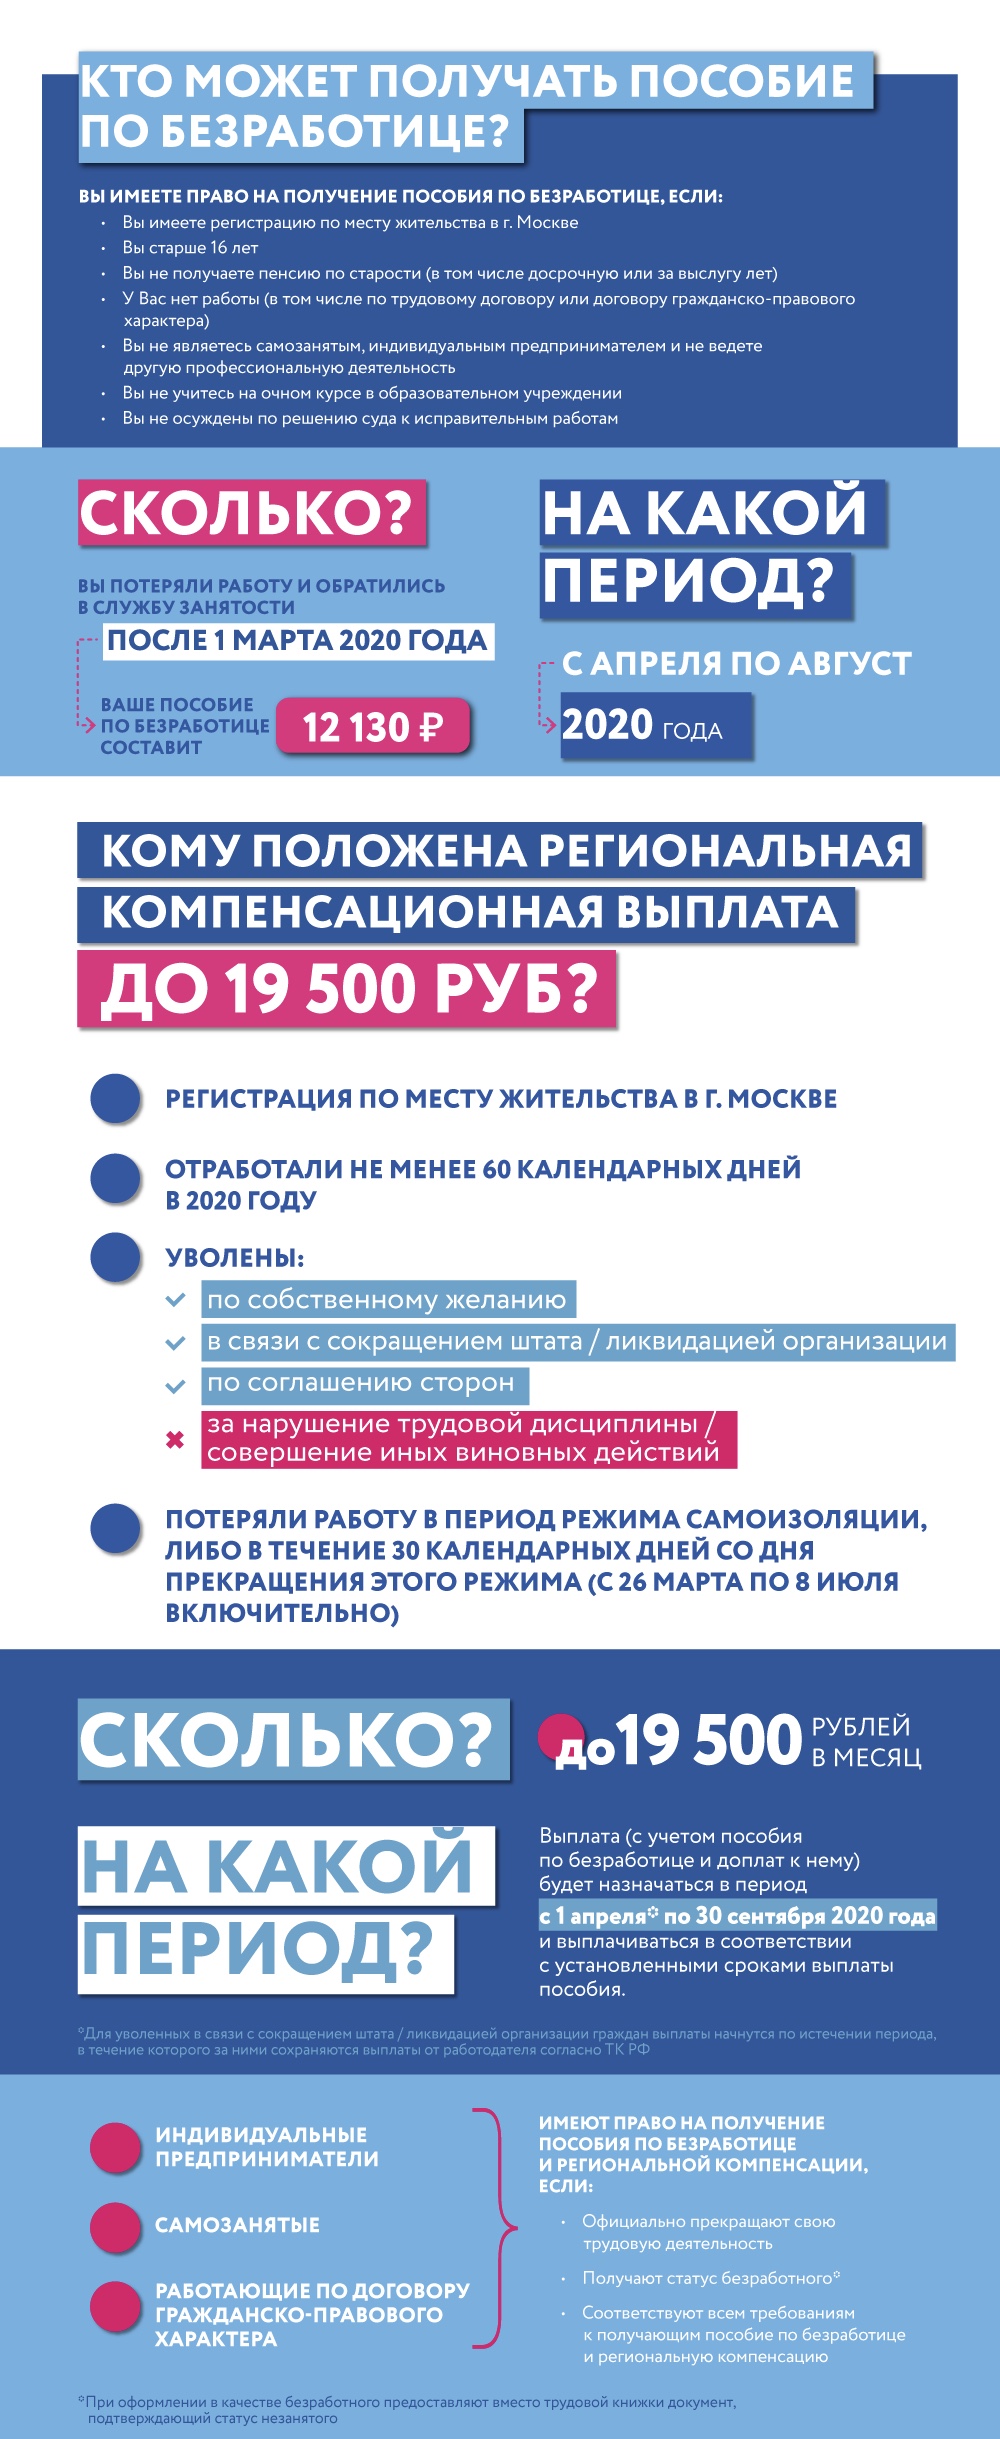 Новое пособие по безработице в москве